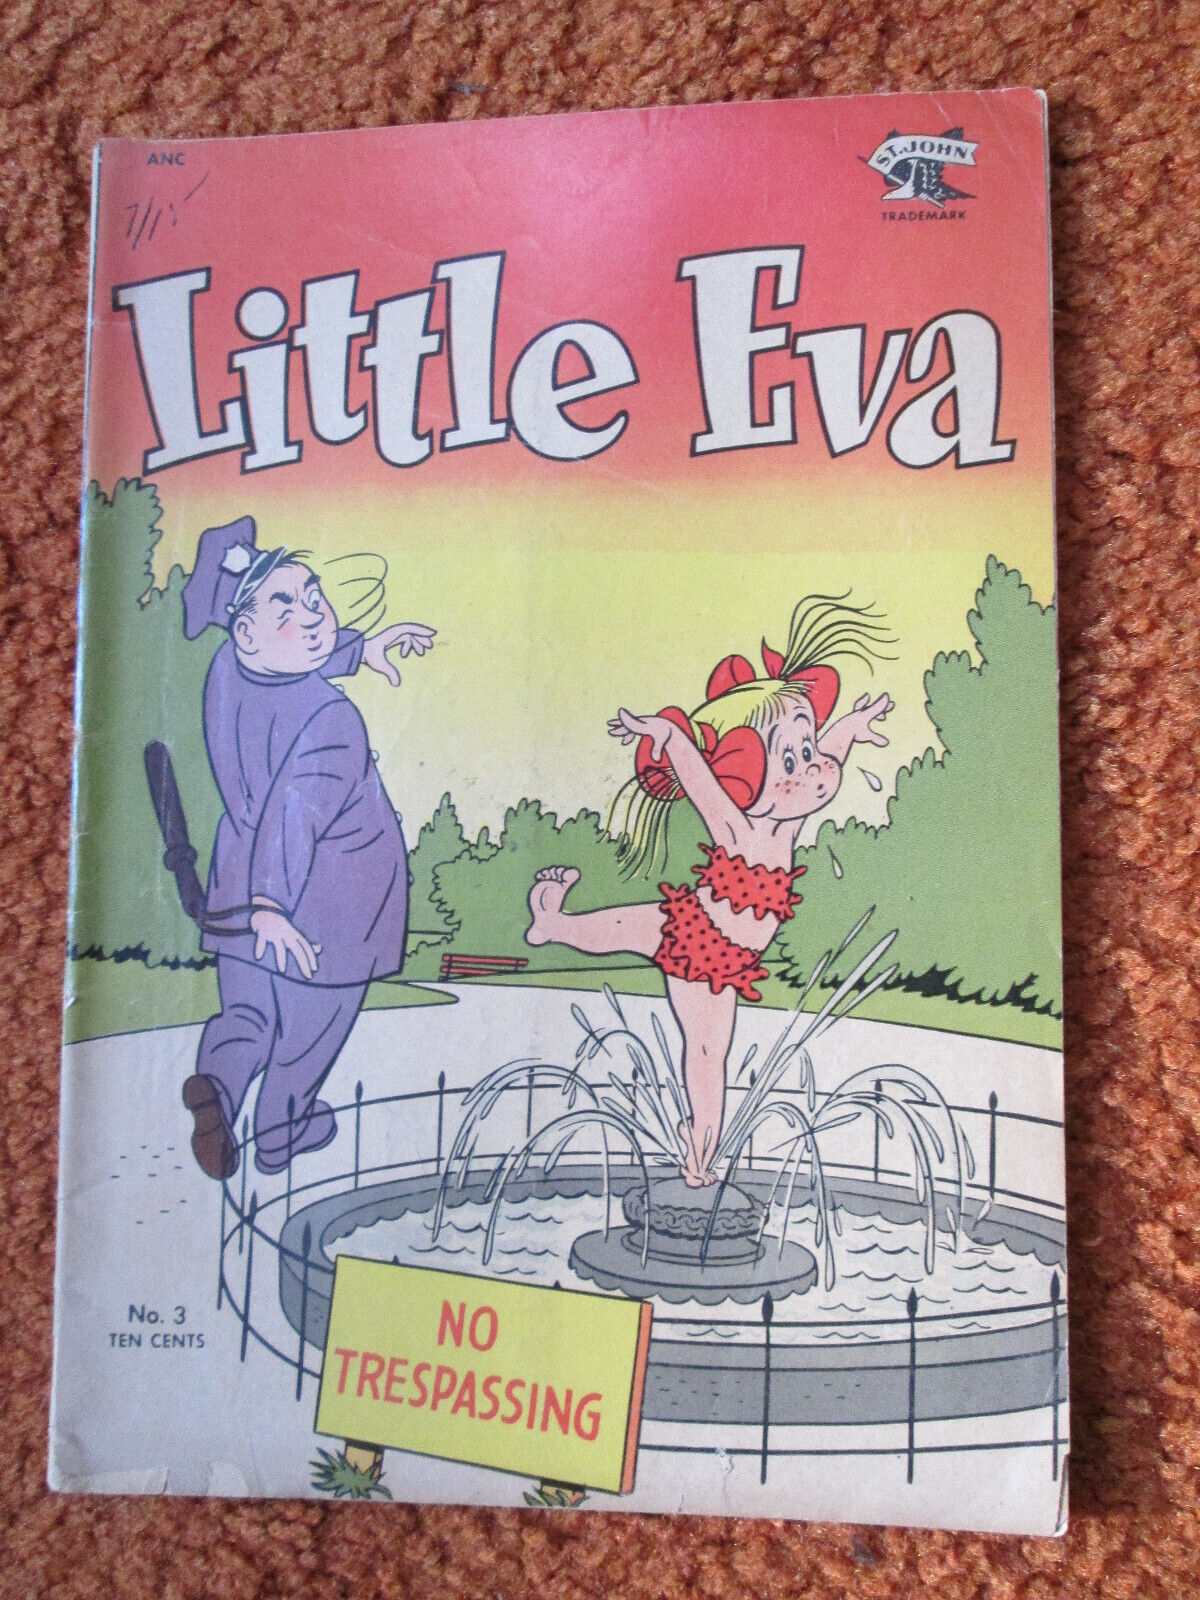 Little Eva # 3 1952 vol. 1 Sept St John good golden ANC comic